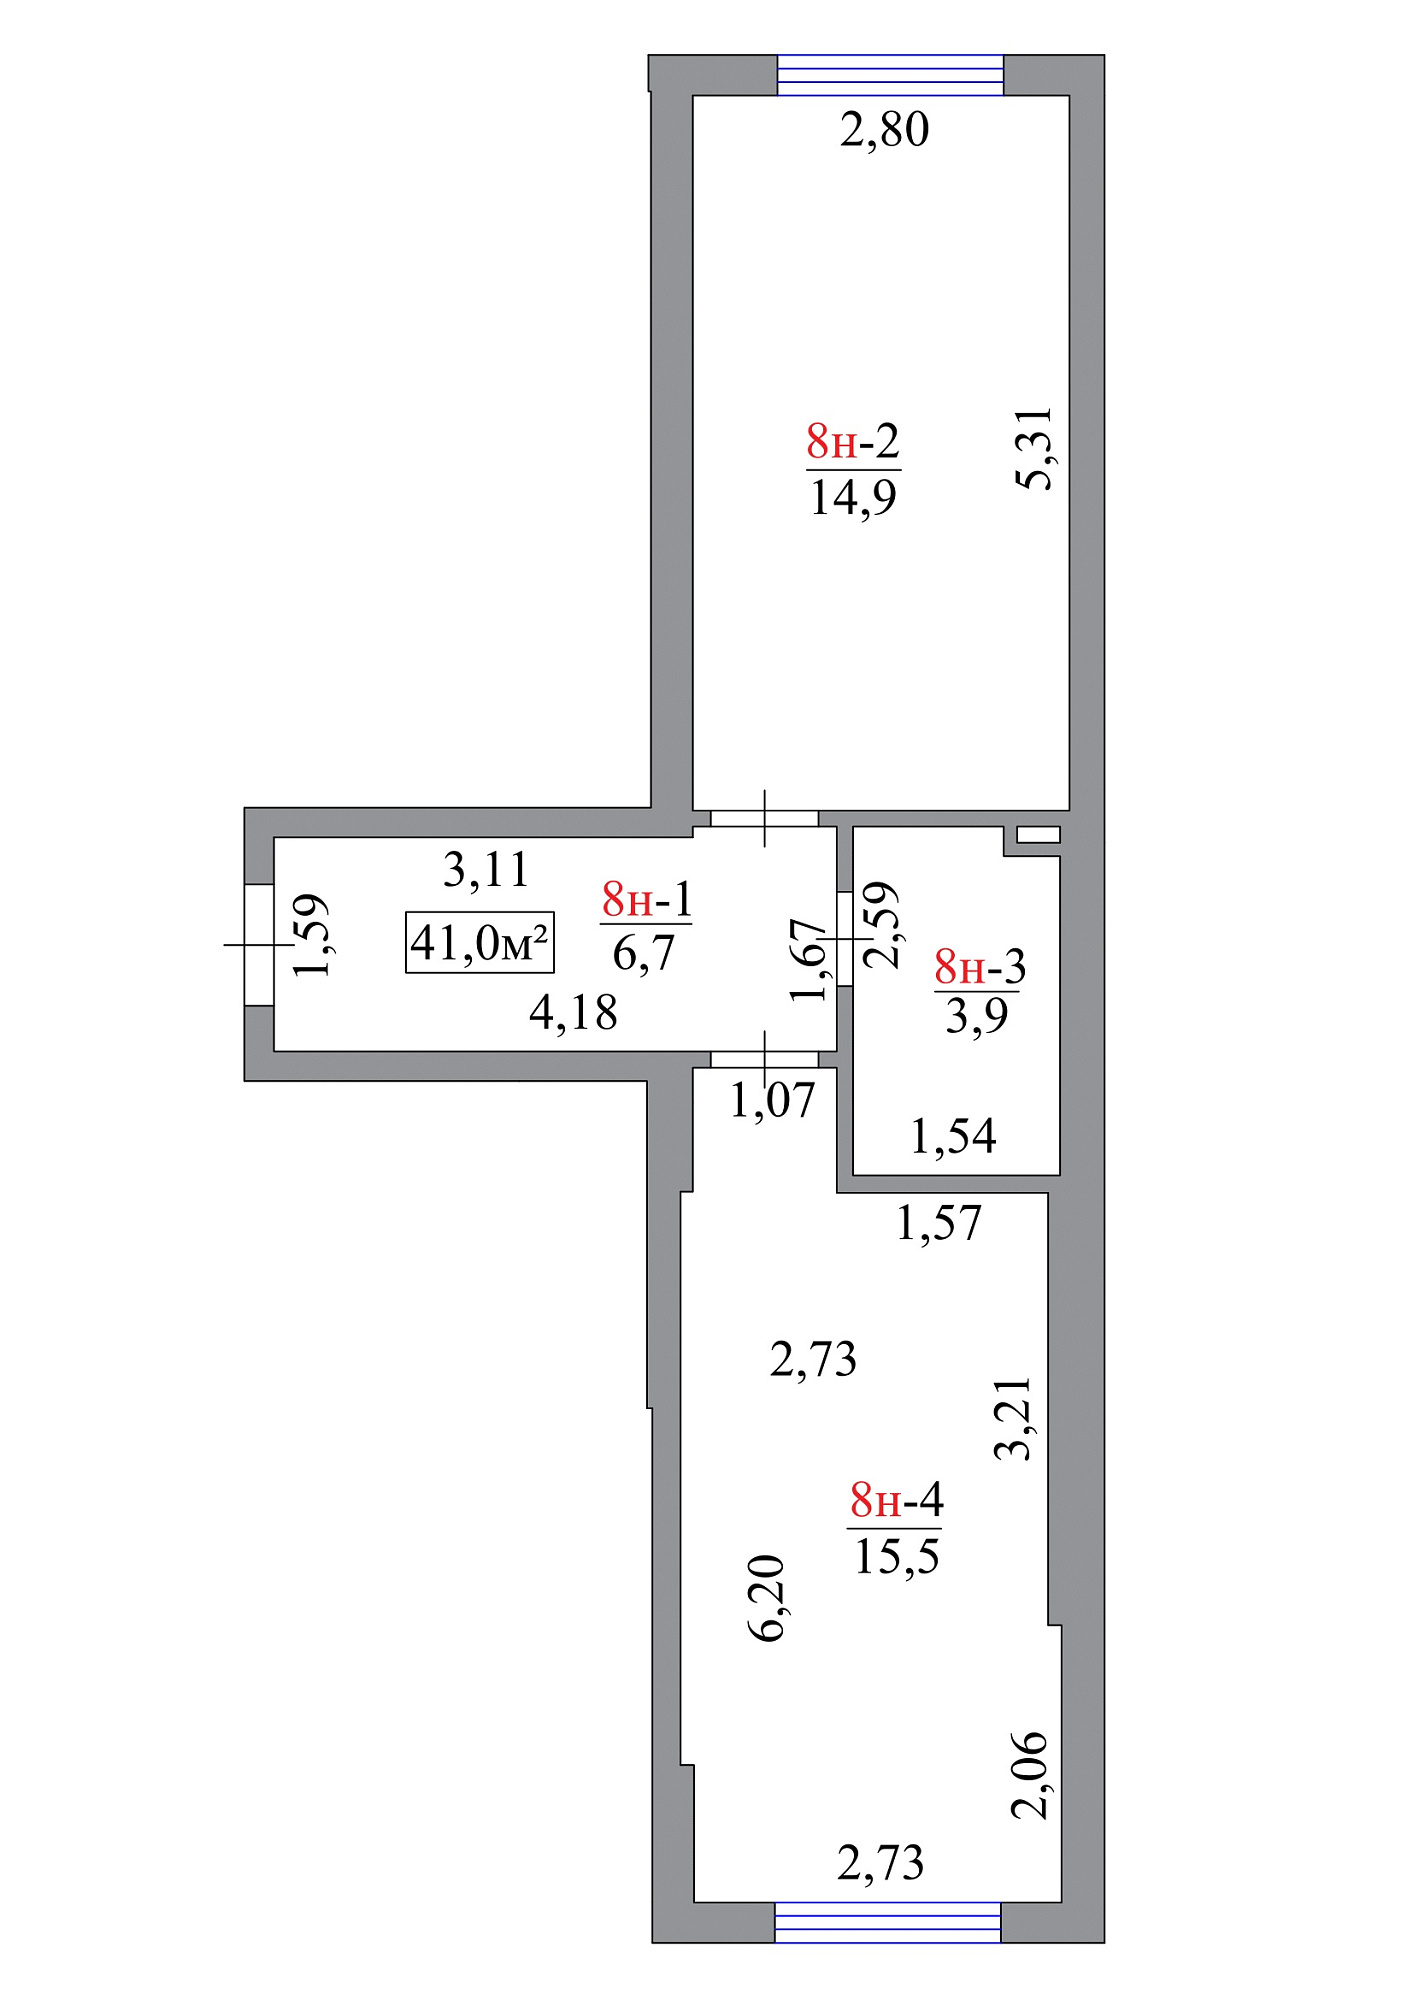 Планировка 1-к квартира площей 41м2, AB-07-01/0007б.